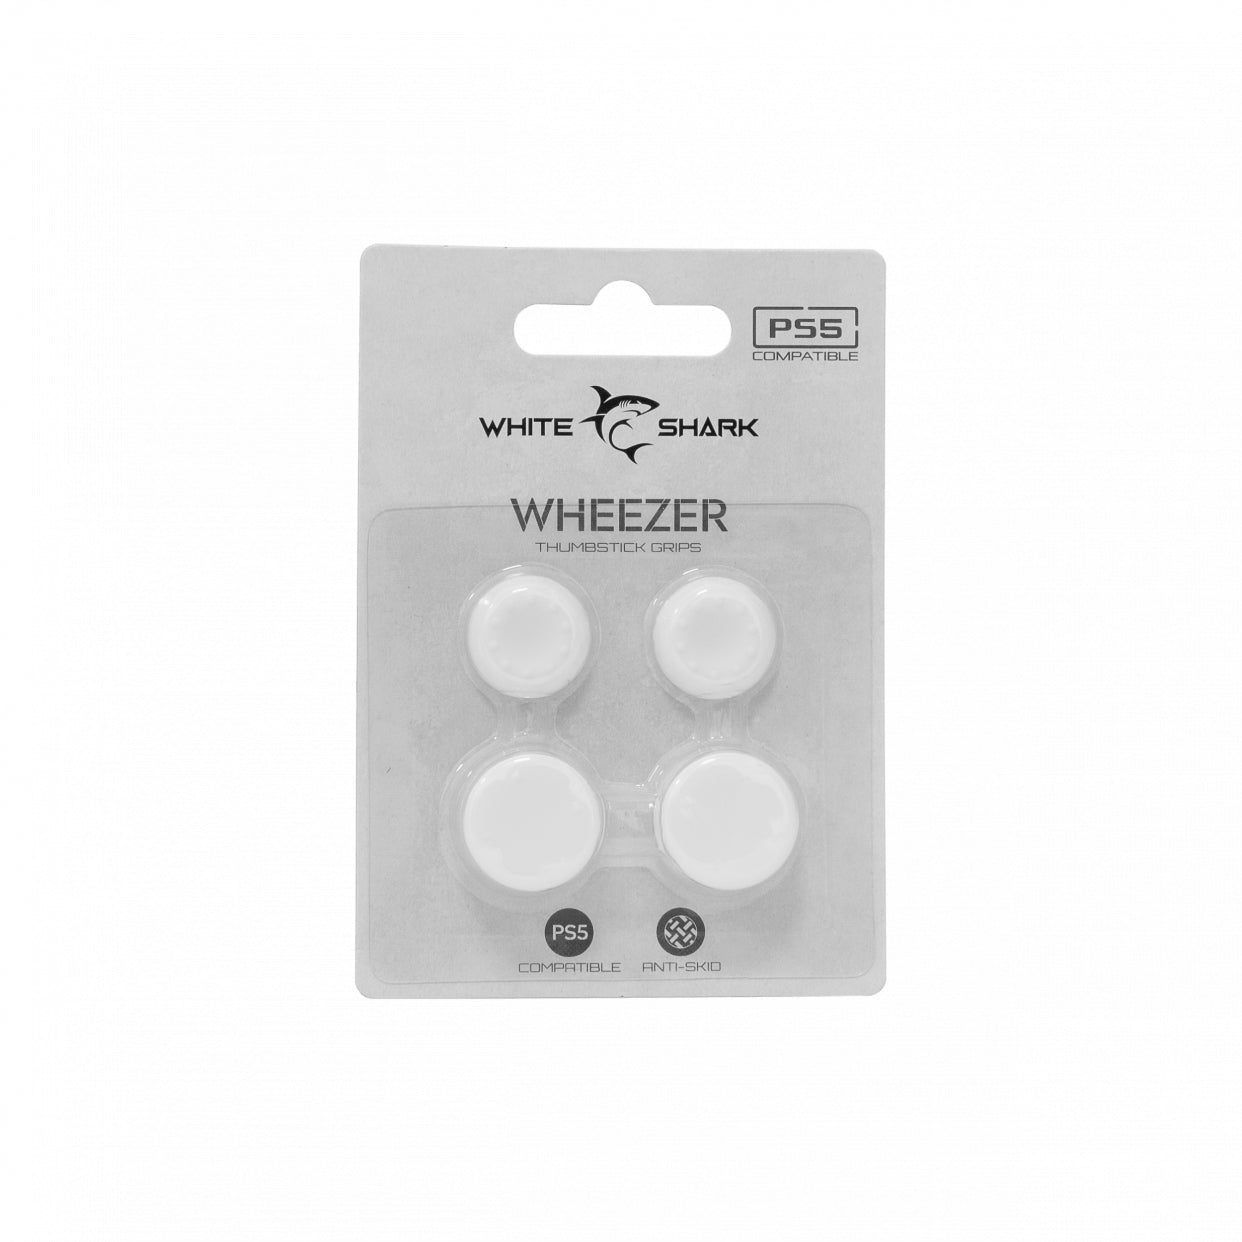 Силиконовые накладки для большого пальца White Shark PS5-817 Wheezer White, для контроллера PS5, белые